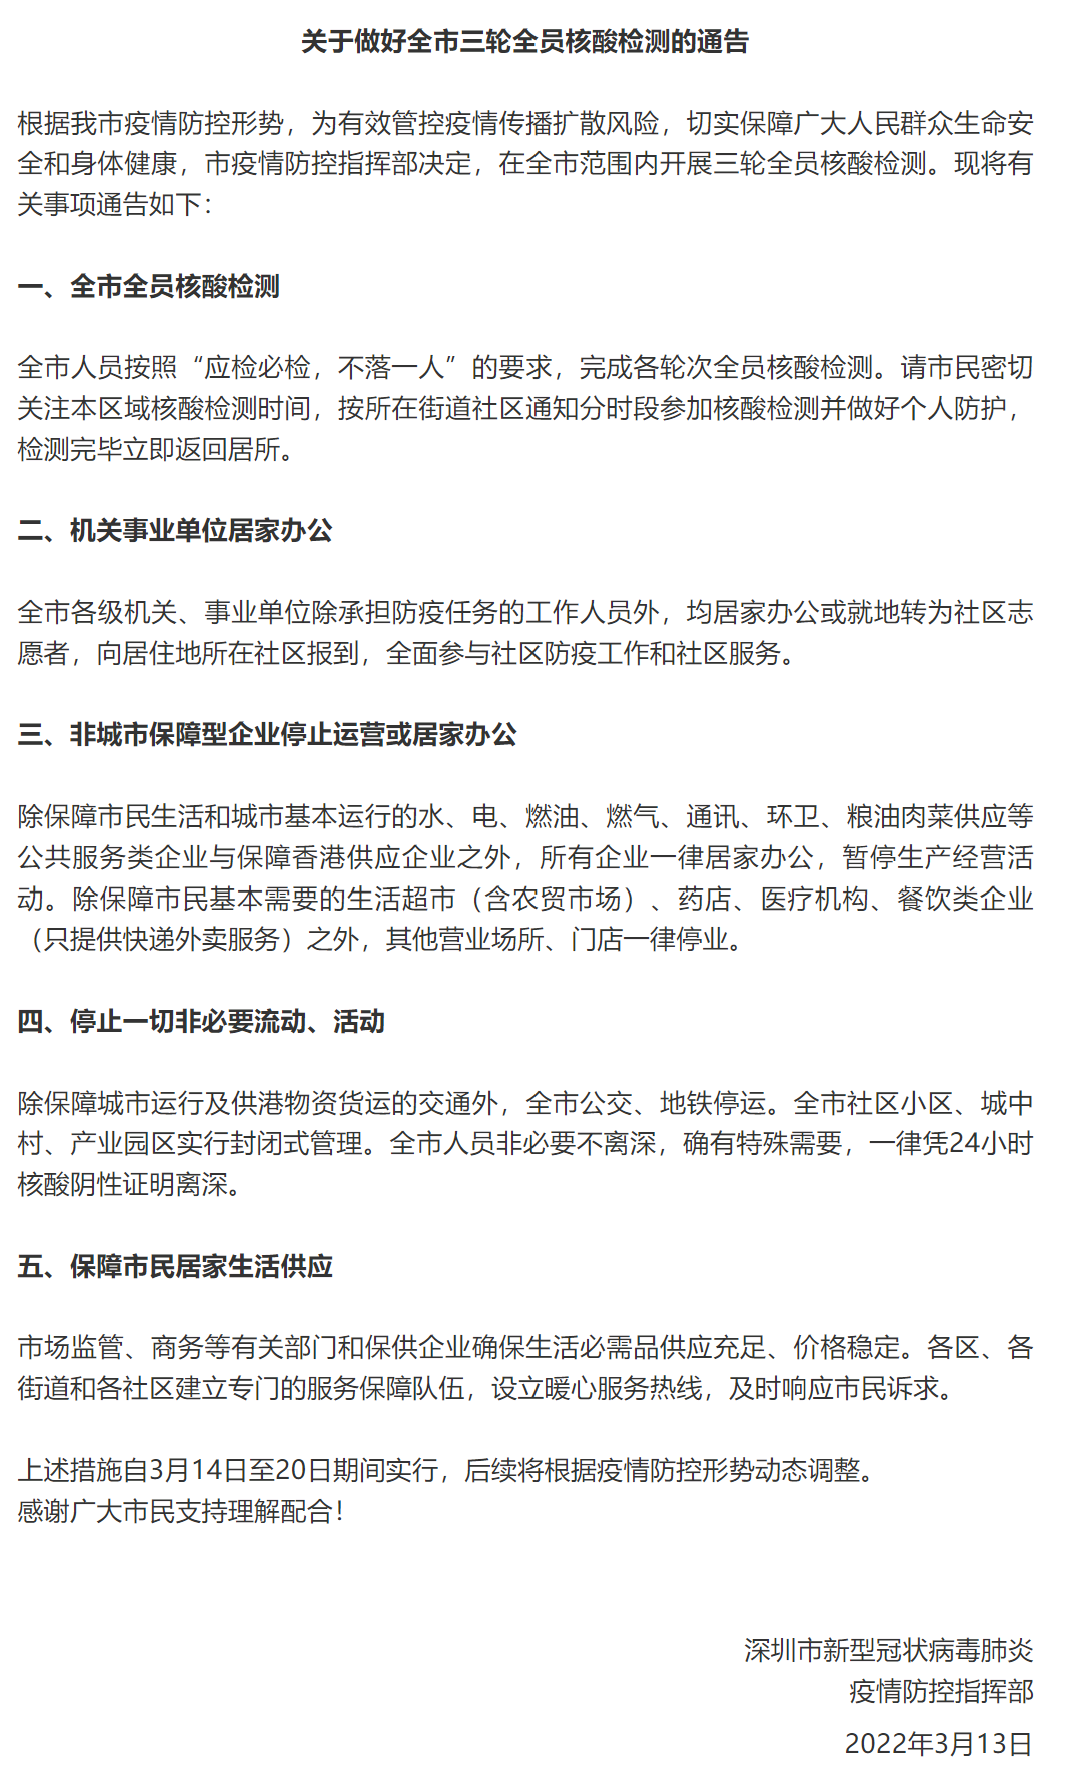 “深圳“暂停”一周，多家基金公司表示正常运作且已做应急预案部署，个别岗位已做特殊安排